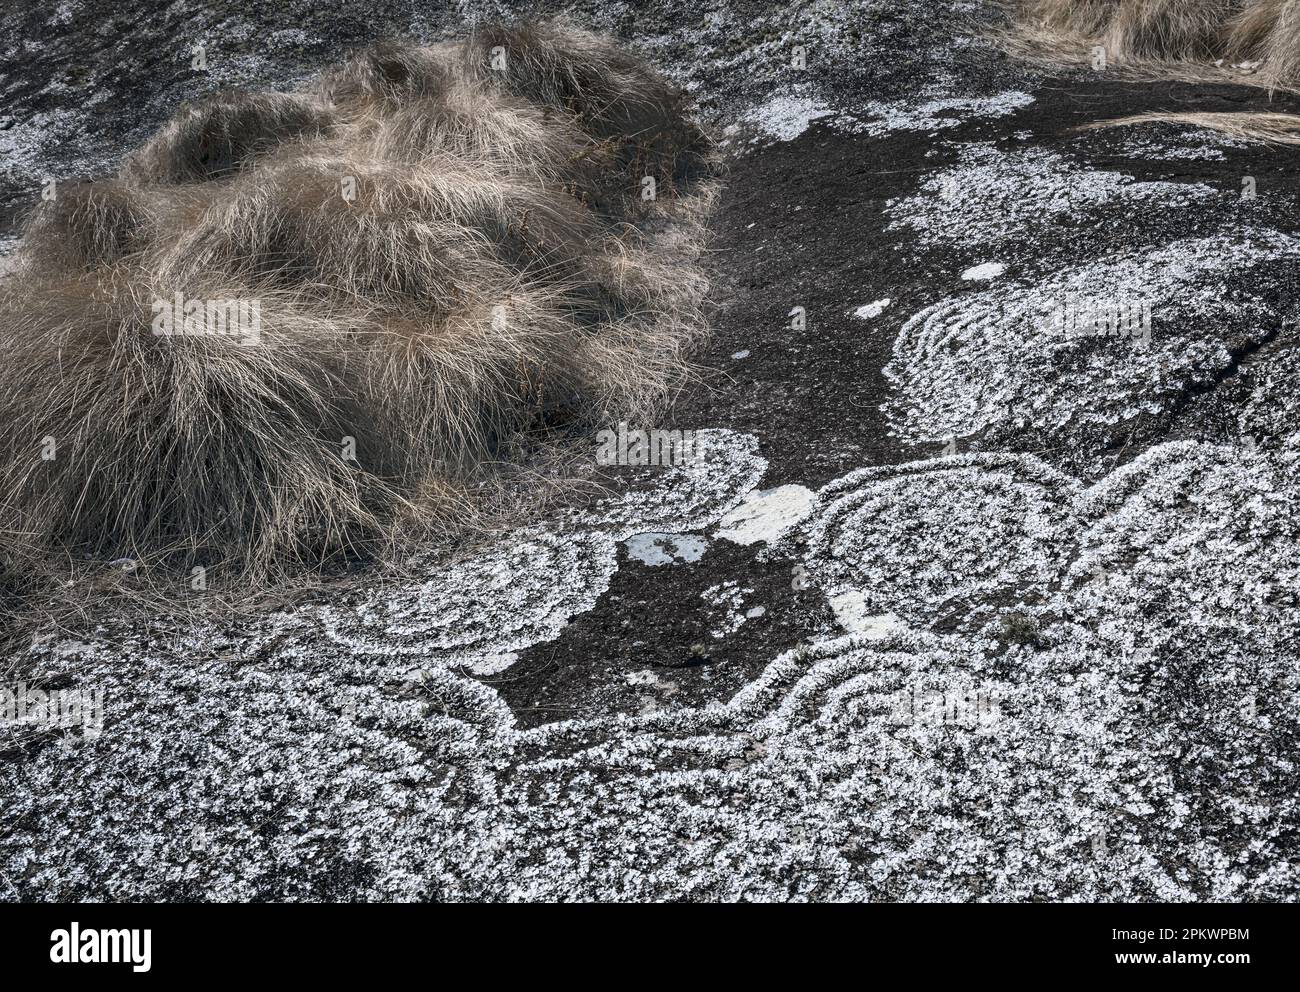 La croissance des lichens forme des patrons circulaires sur les gros rochers du parc national de Norika, dans le nord du Malawi. Banque D'Images